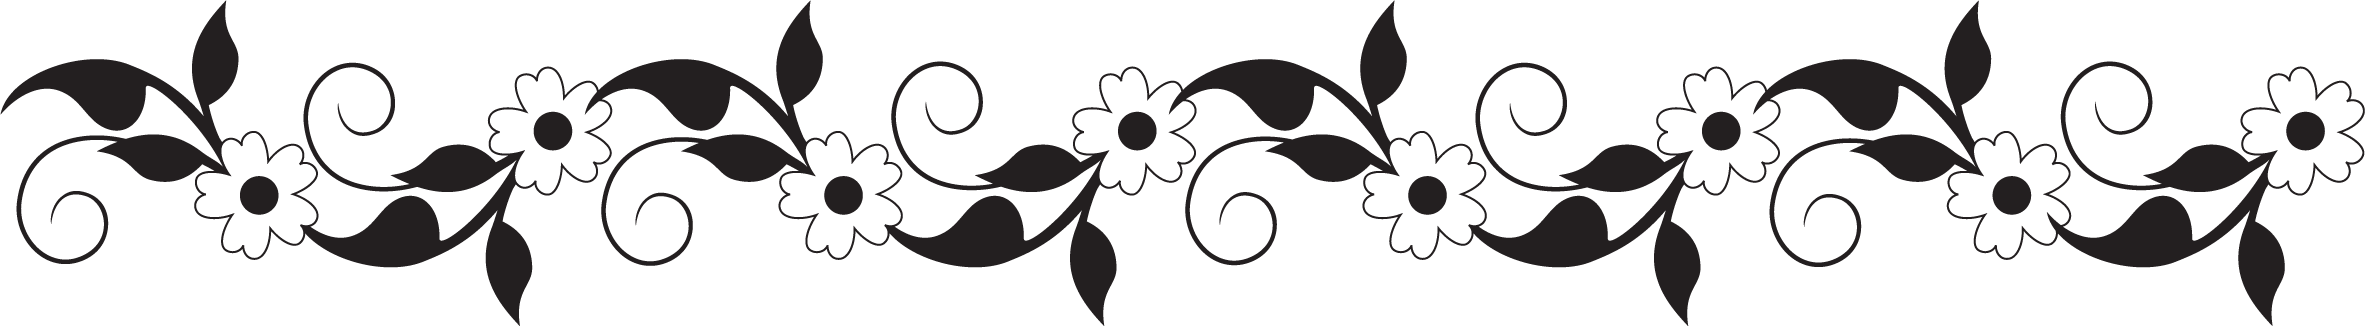 白黒 モノクロの花のイラスト フリー素材 ライン線 コーナー用no 842 白黒 葉 ボーダー